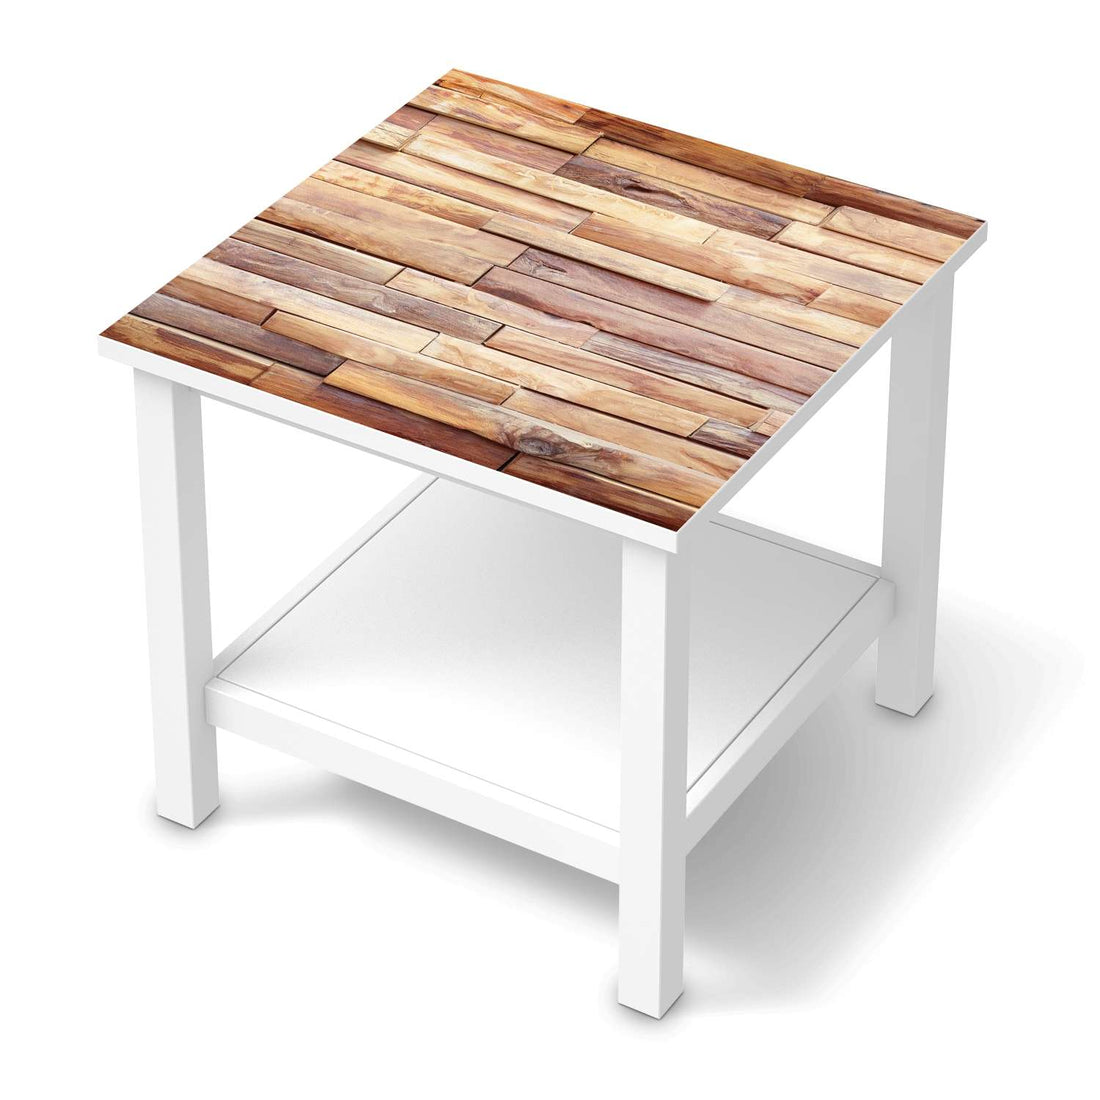 Möbel Klebefolie Artwood - IKEA Hemnes Beistelltisch 55x55 cm  - weiss